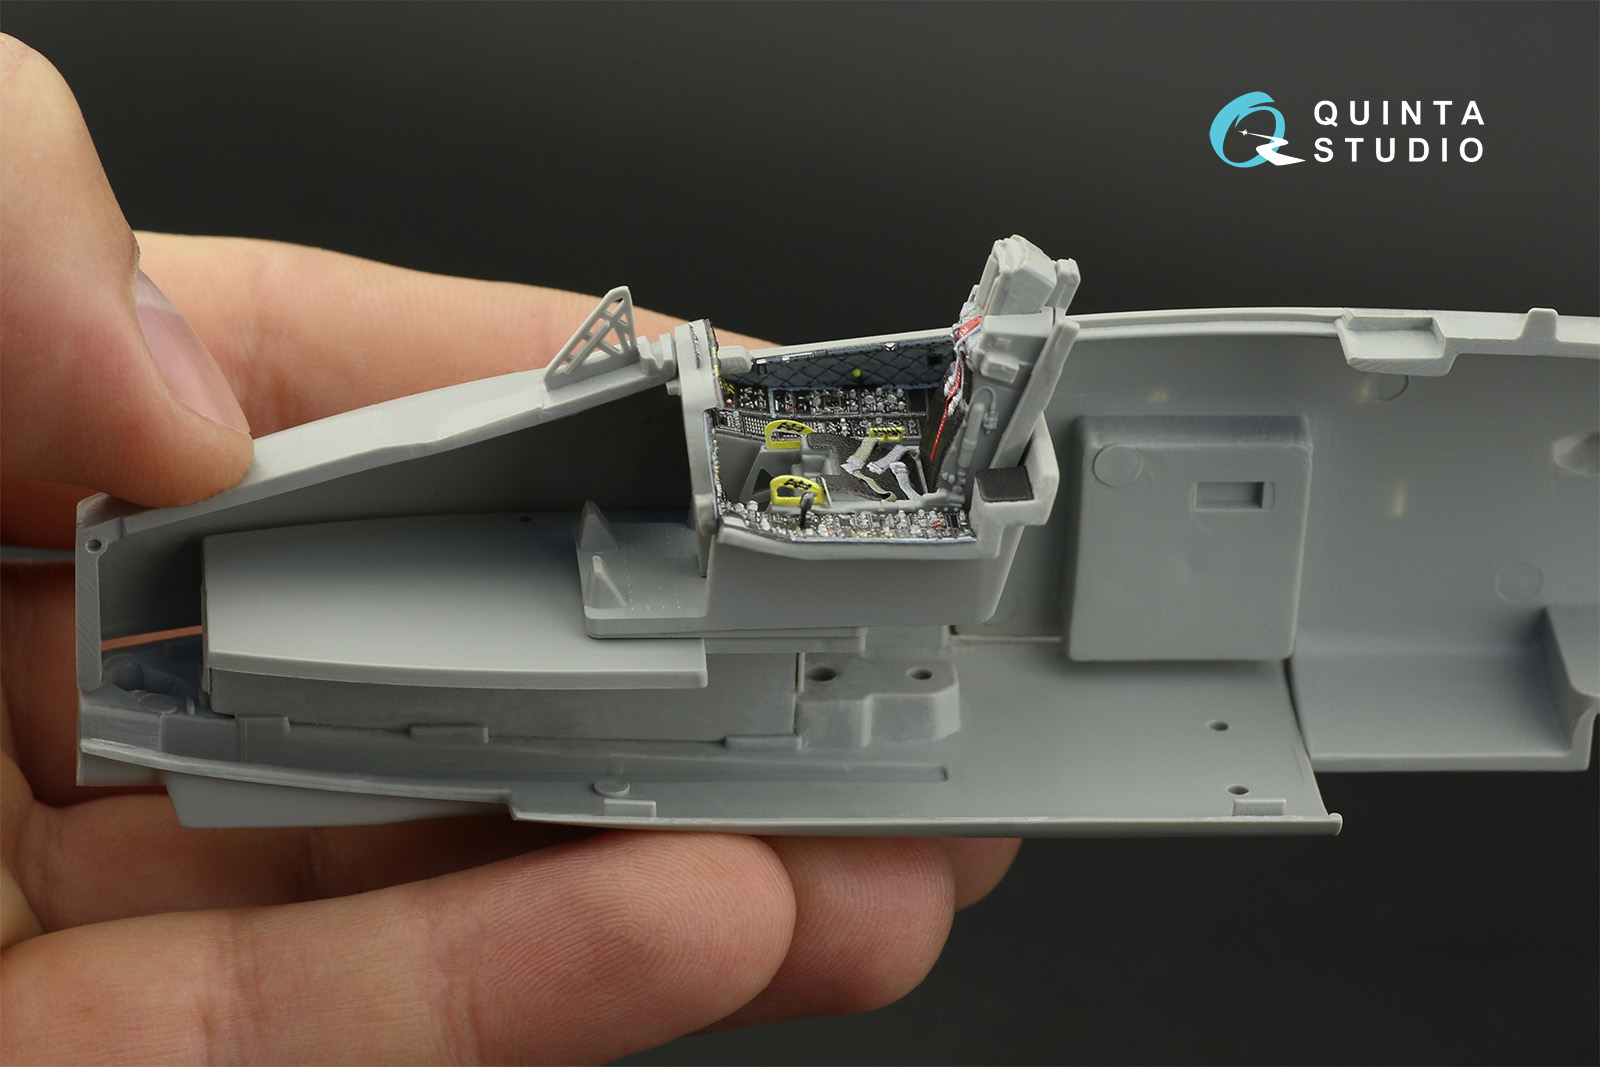 3D Декаль интерьера кабины A-10C (Italeri)